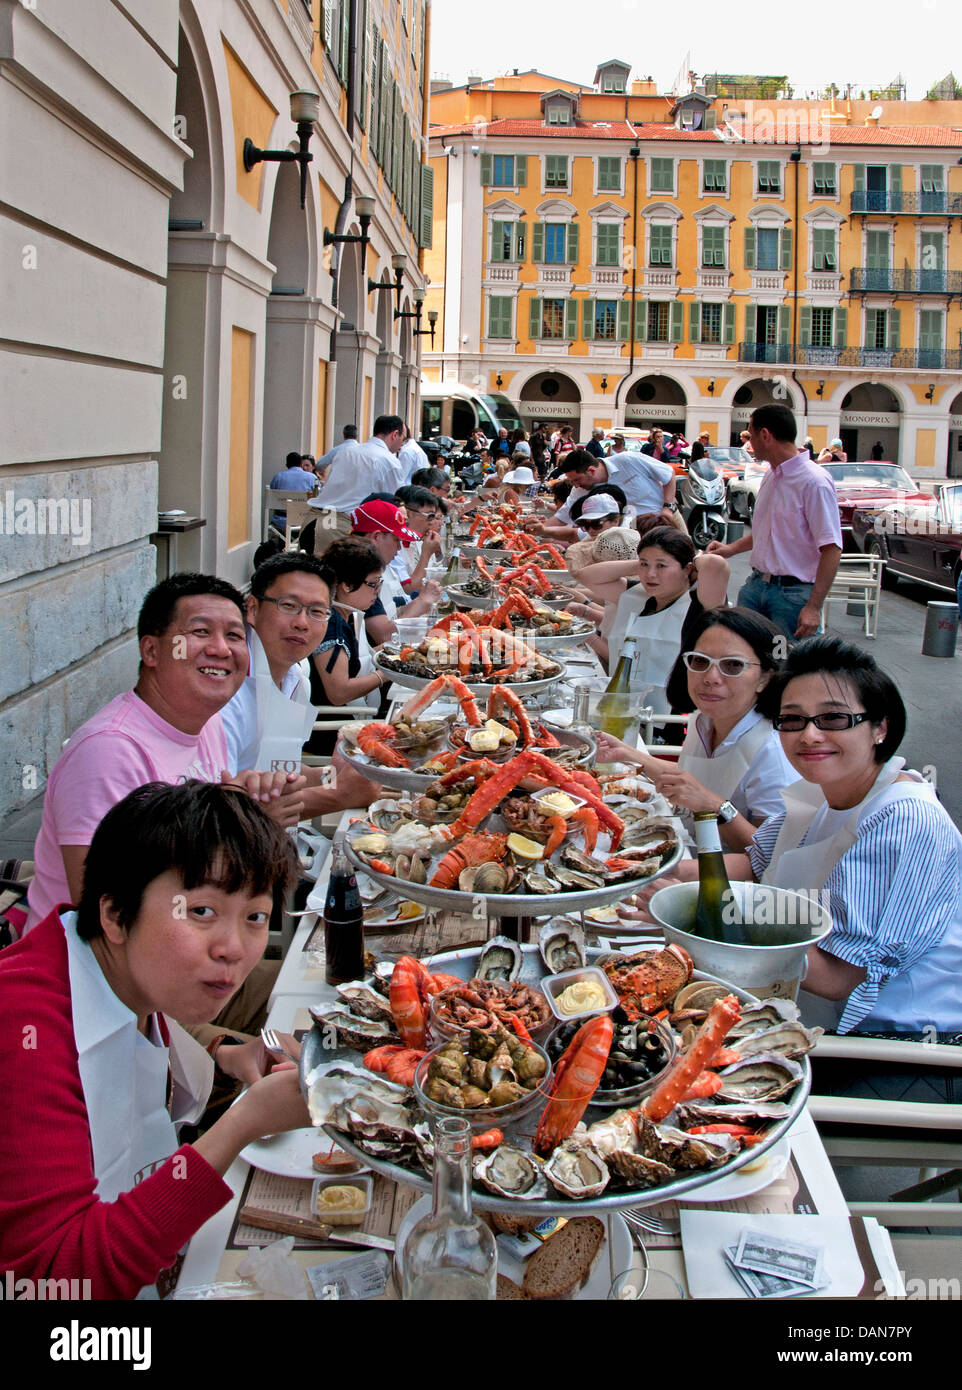 Le déjeuner le café de Turin Nice France Chinois Fruits de mer fruits de mer Crevettes Huîtres française Crevettes Crabe Homard Moules Banque D'Images